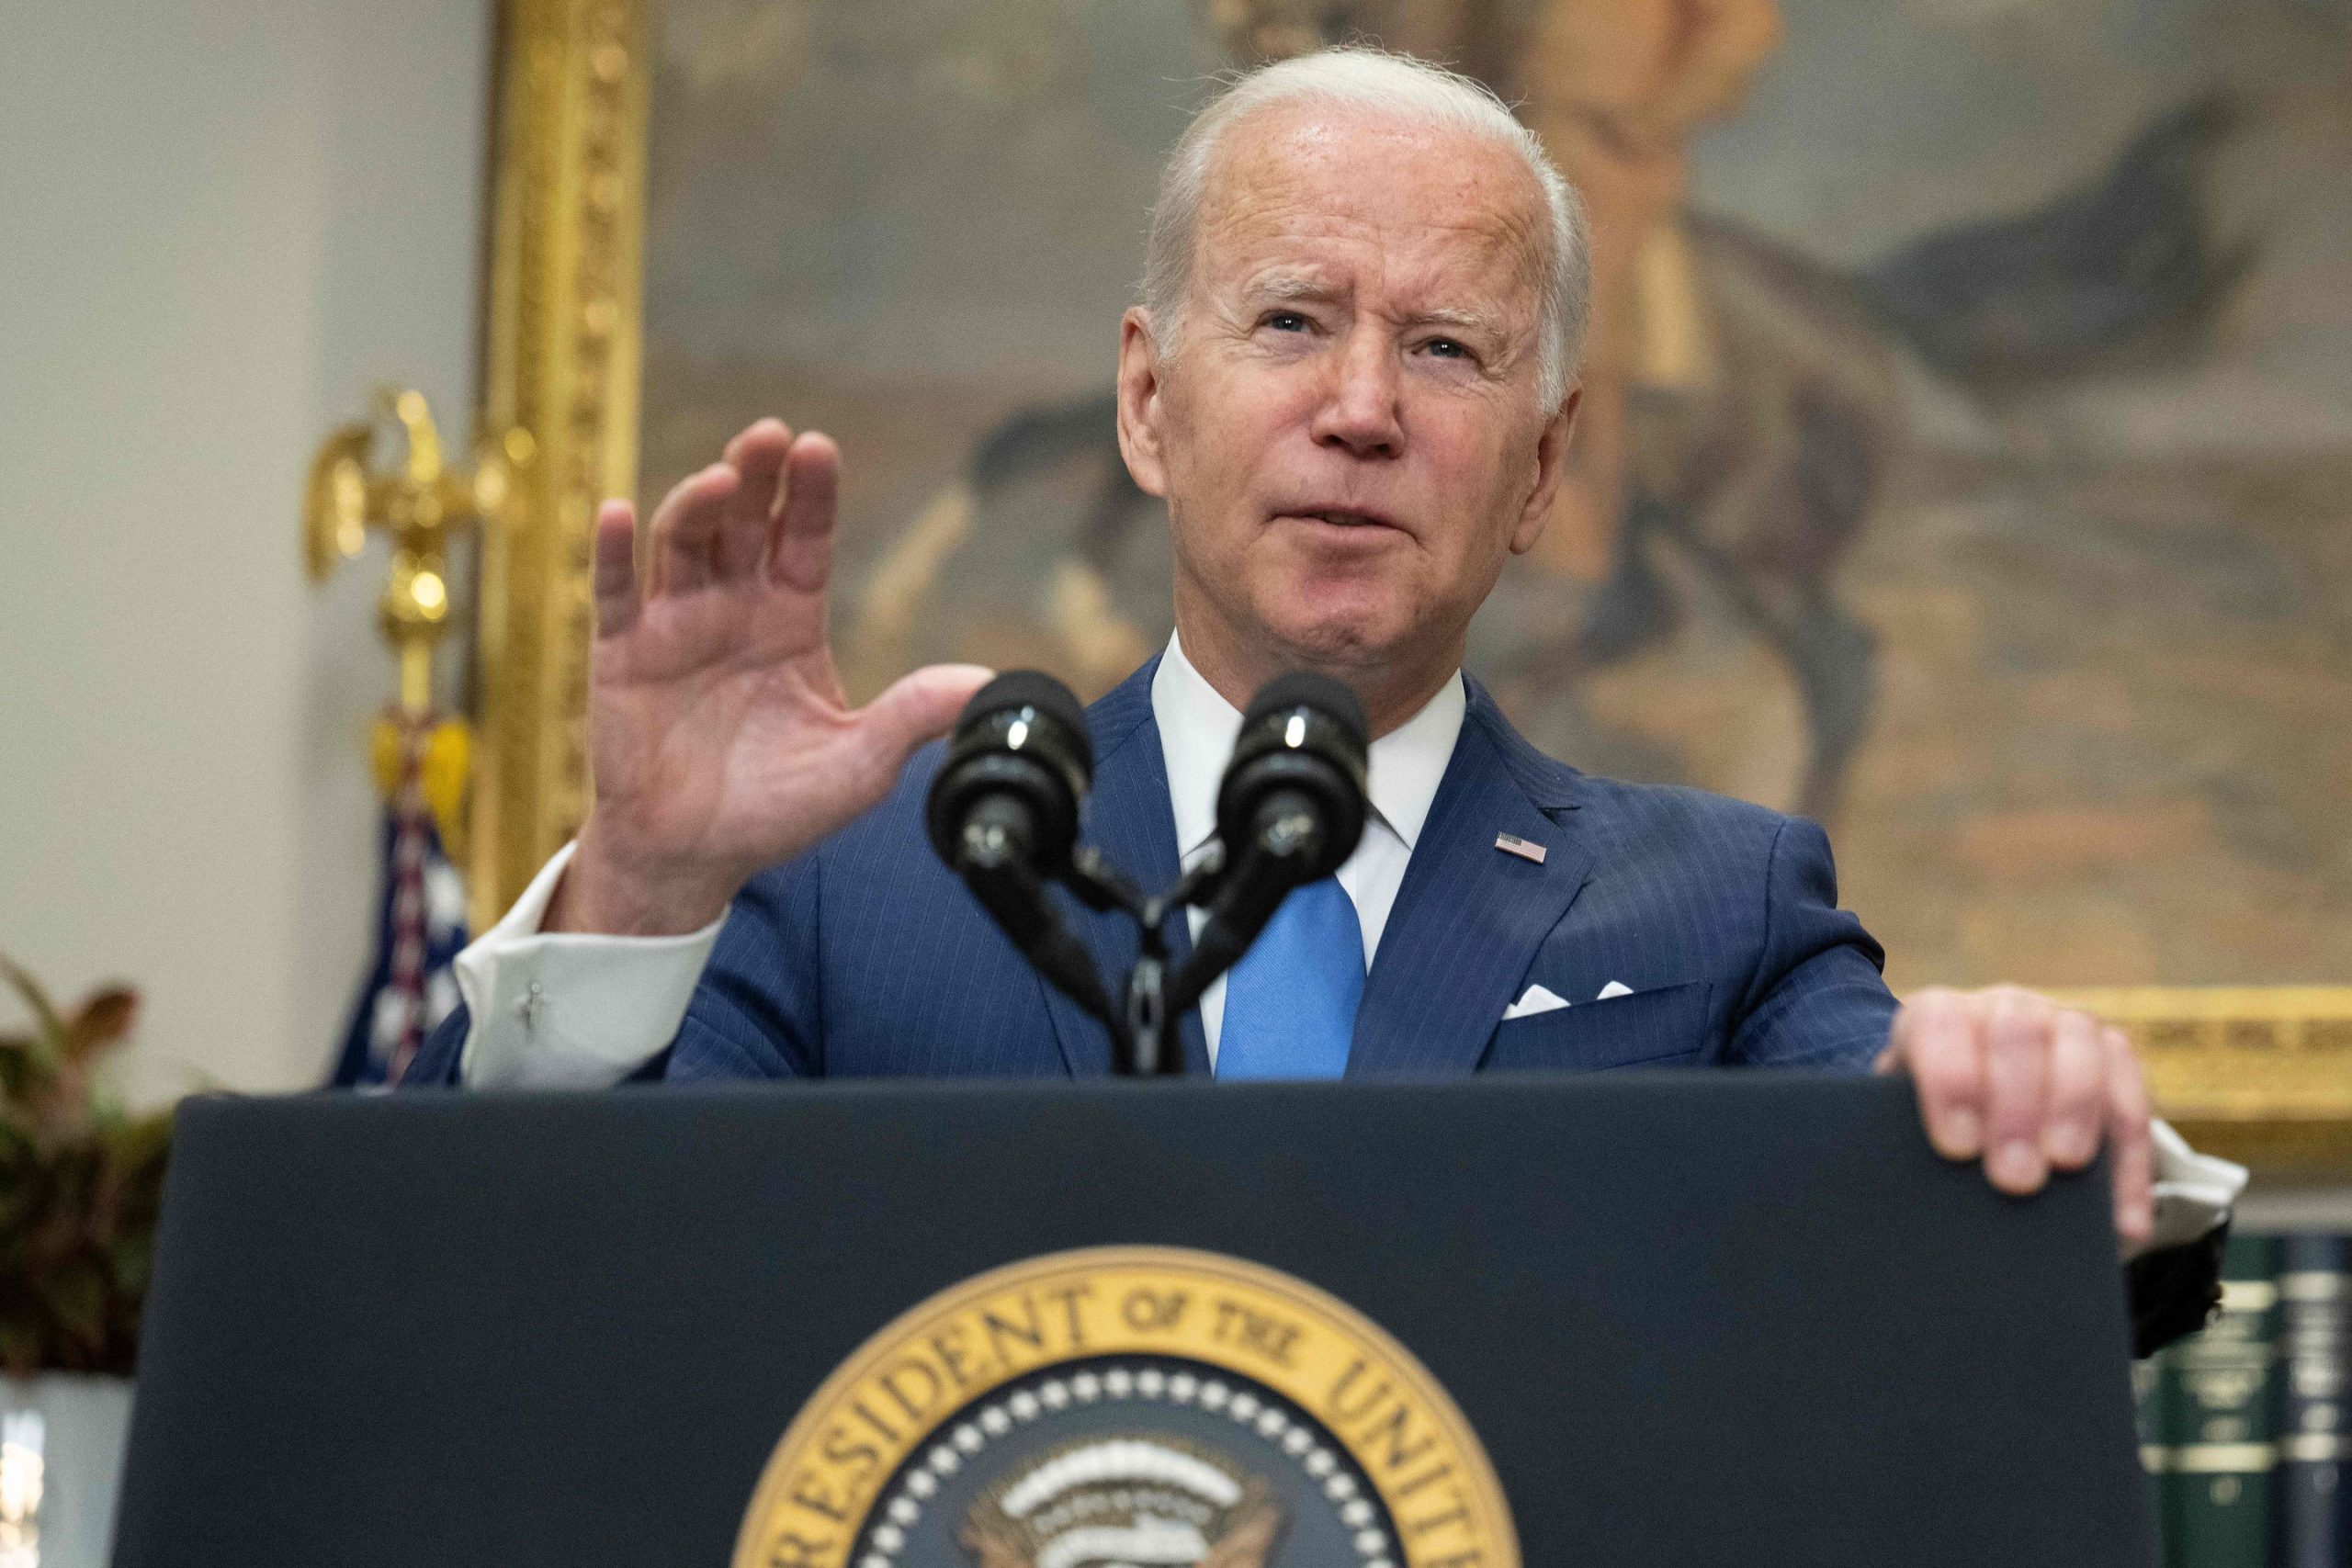 President Joe Biden says he won't cancel $50,000 per borrower in student loan debt